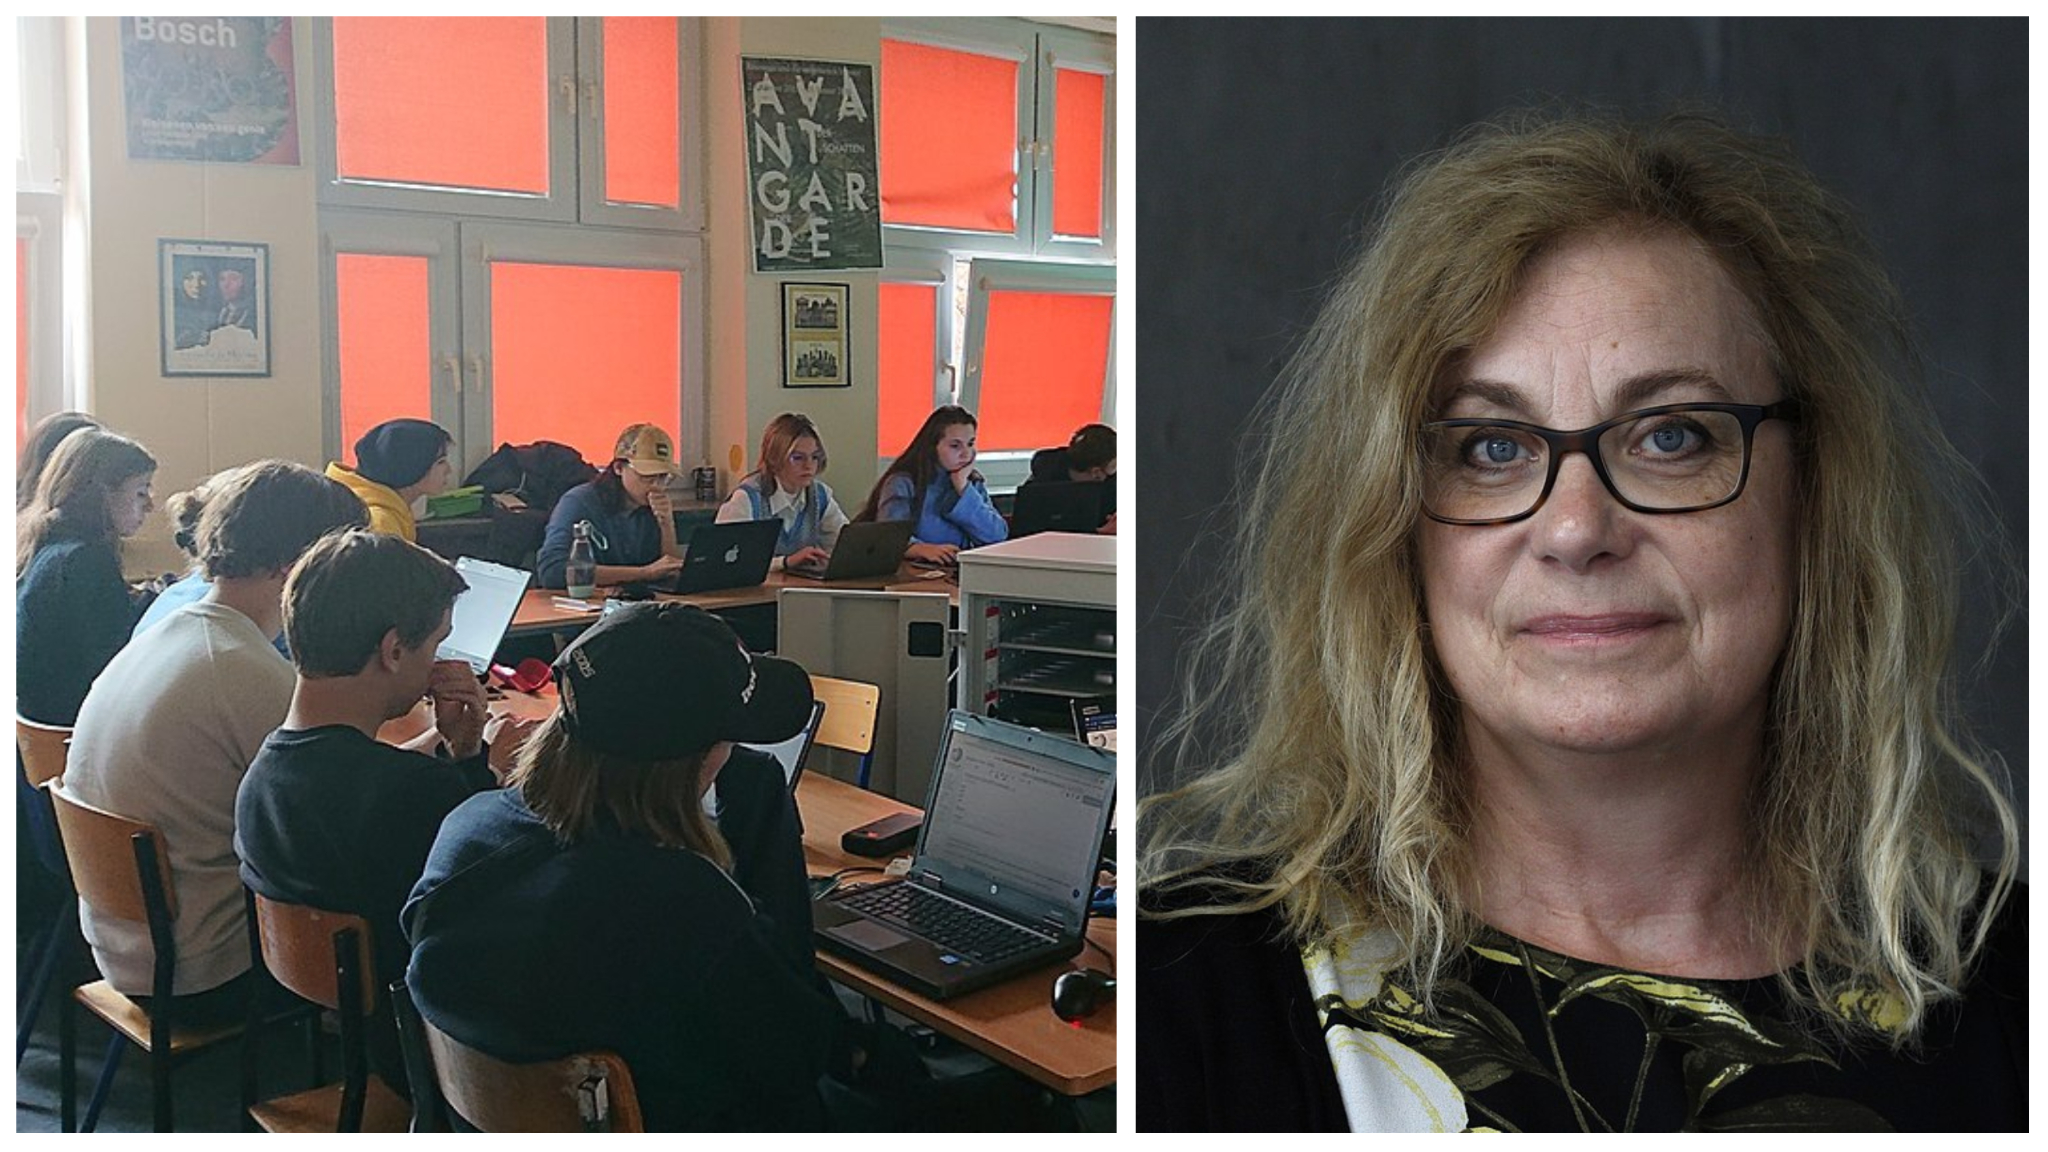 Tvådelat foto: Till vänster elever med bärbara datorer i ett klassrum; till höger porträttfoto föreställande pedagogikforskaren Elza Dunkels.